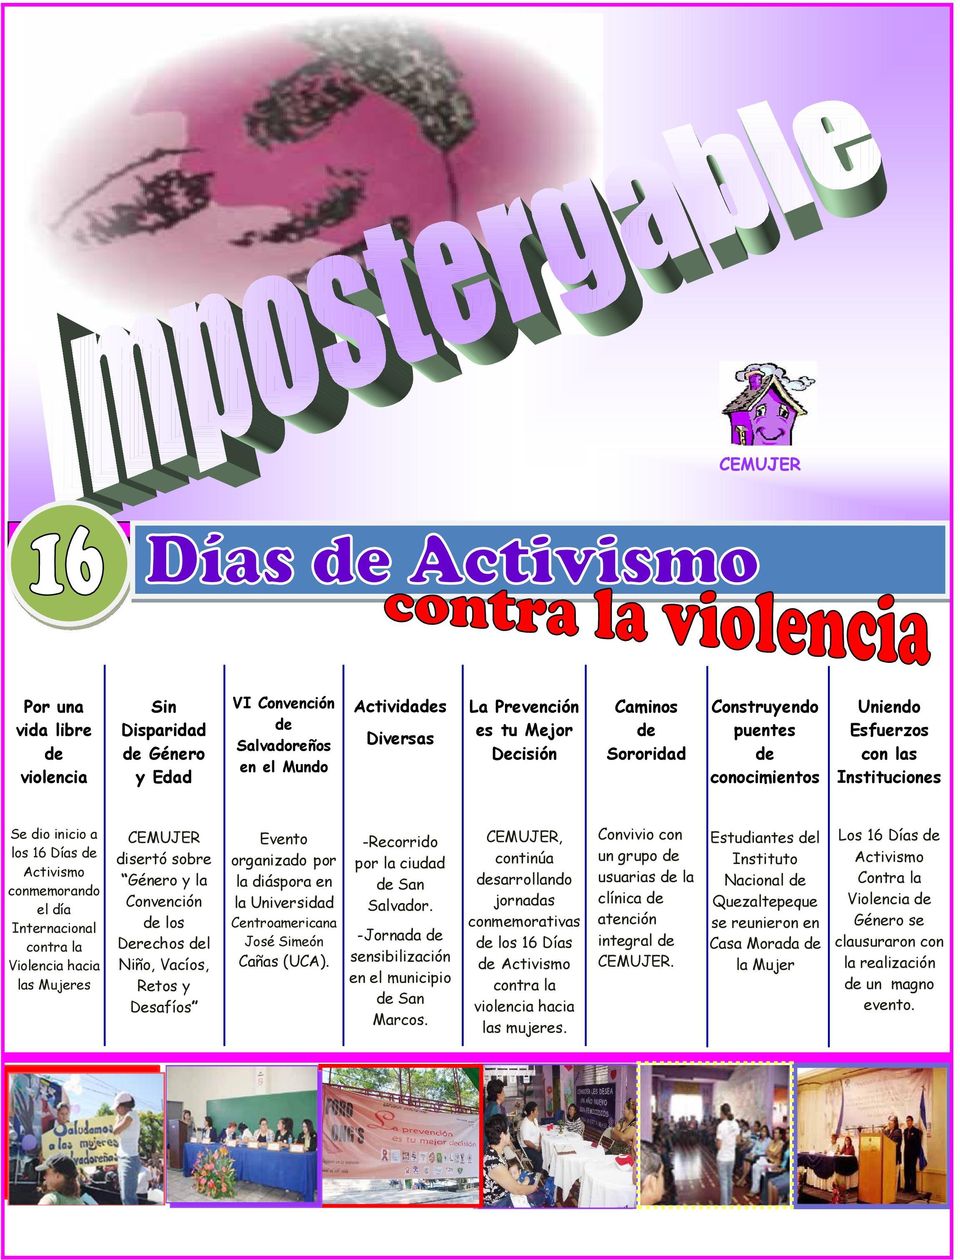 4 Marzo 2008 Por una vida libre violencia Sin Disparidad Género y Edad VI Convención Salvadoreños en el Mundo Actividas Diversas La Prevención es tu Mejor Decisión Caminos Sororidad Construyendo